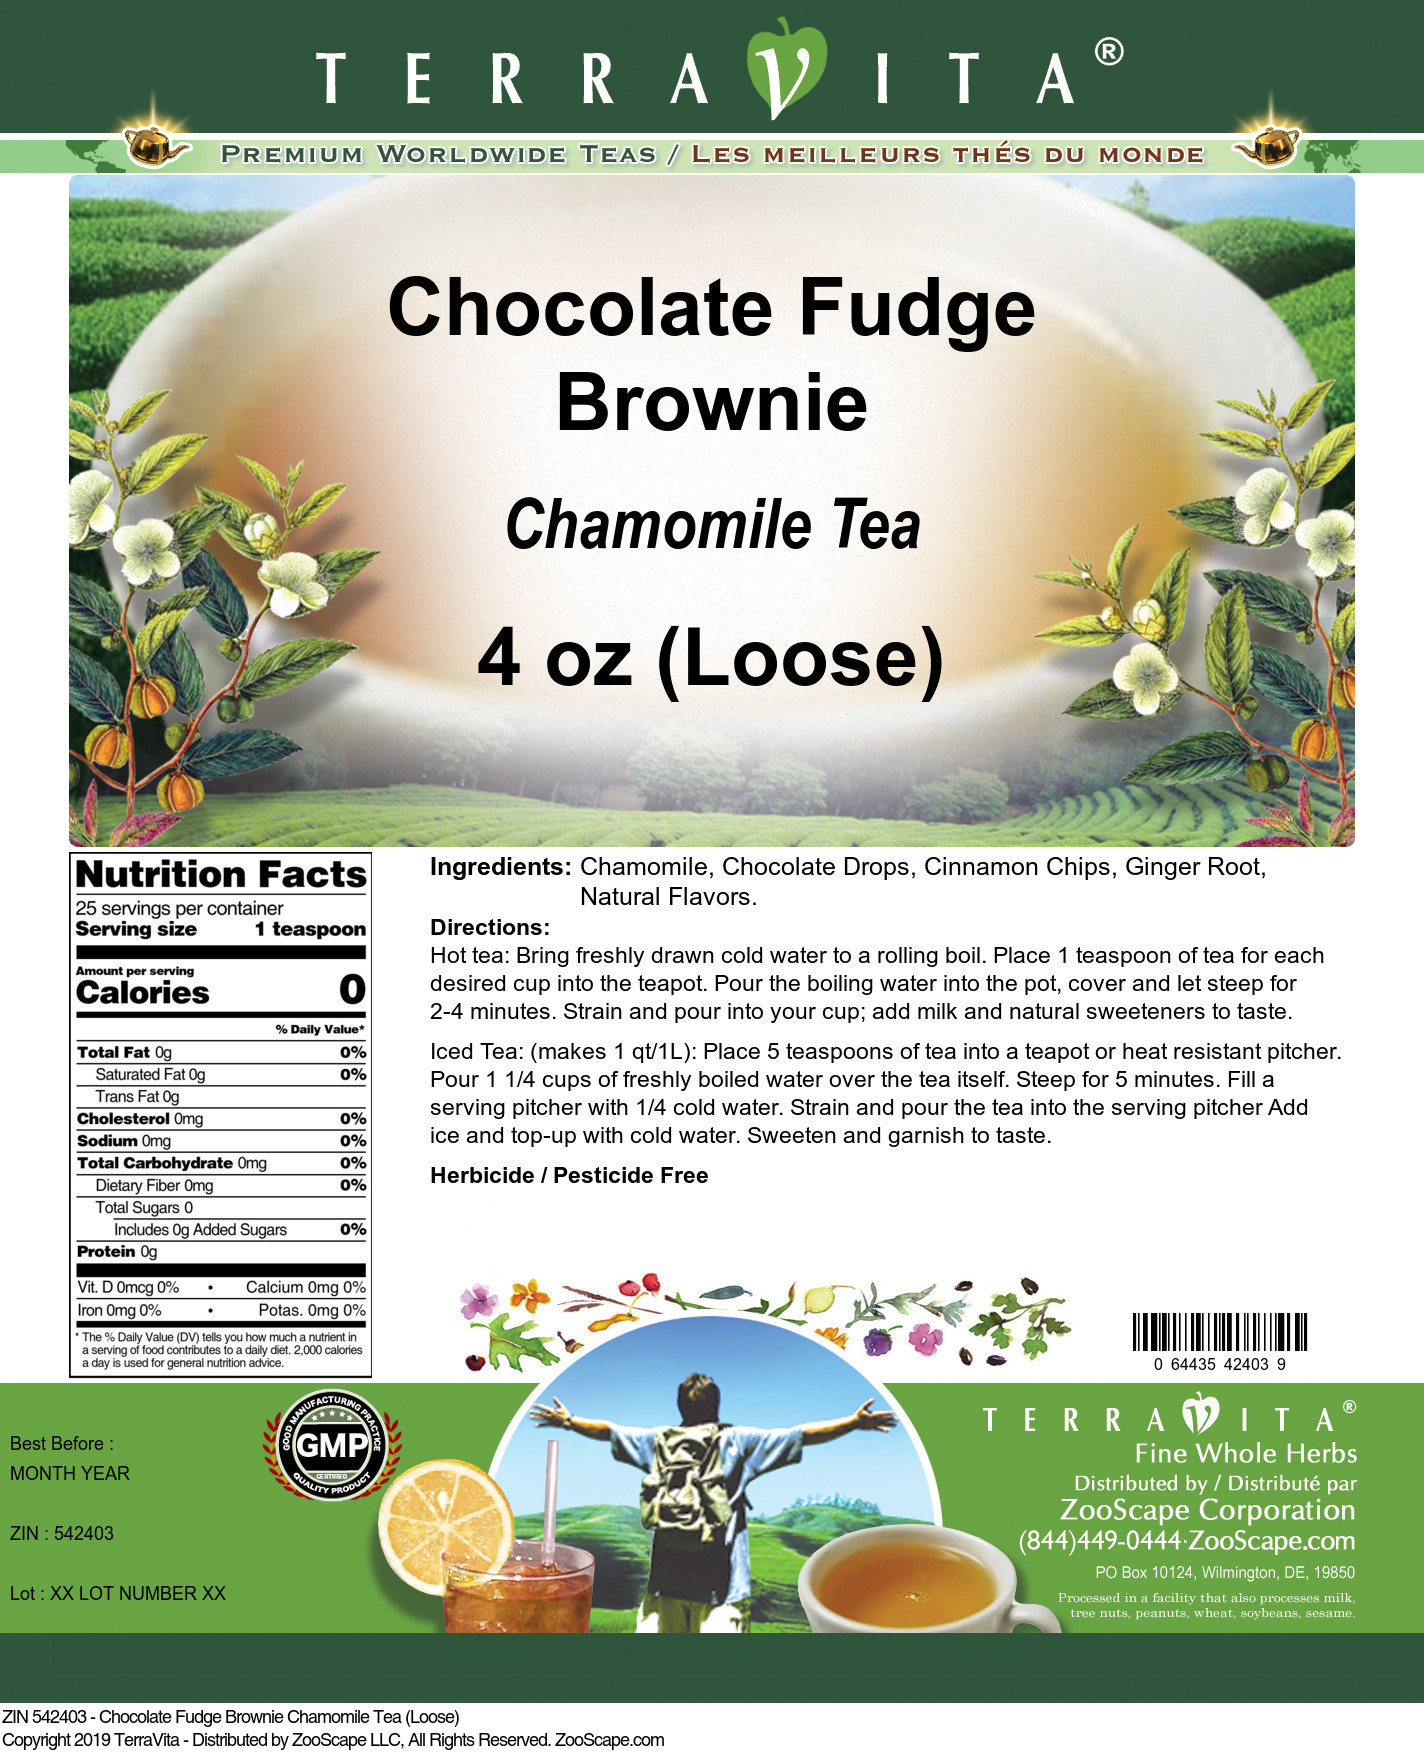 Chocolate Fudge Brownie Chamomile Tea (Loose) - Label